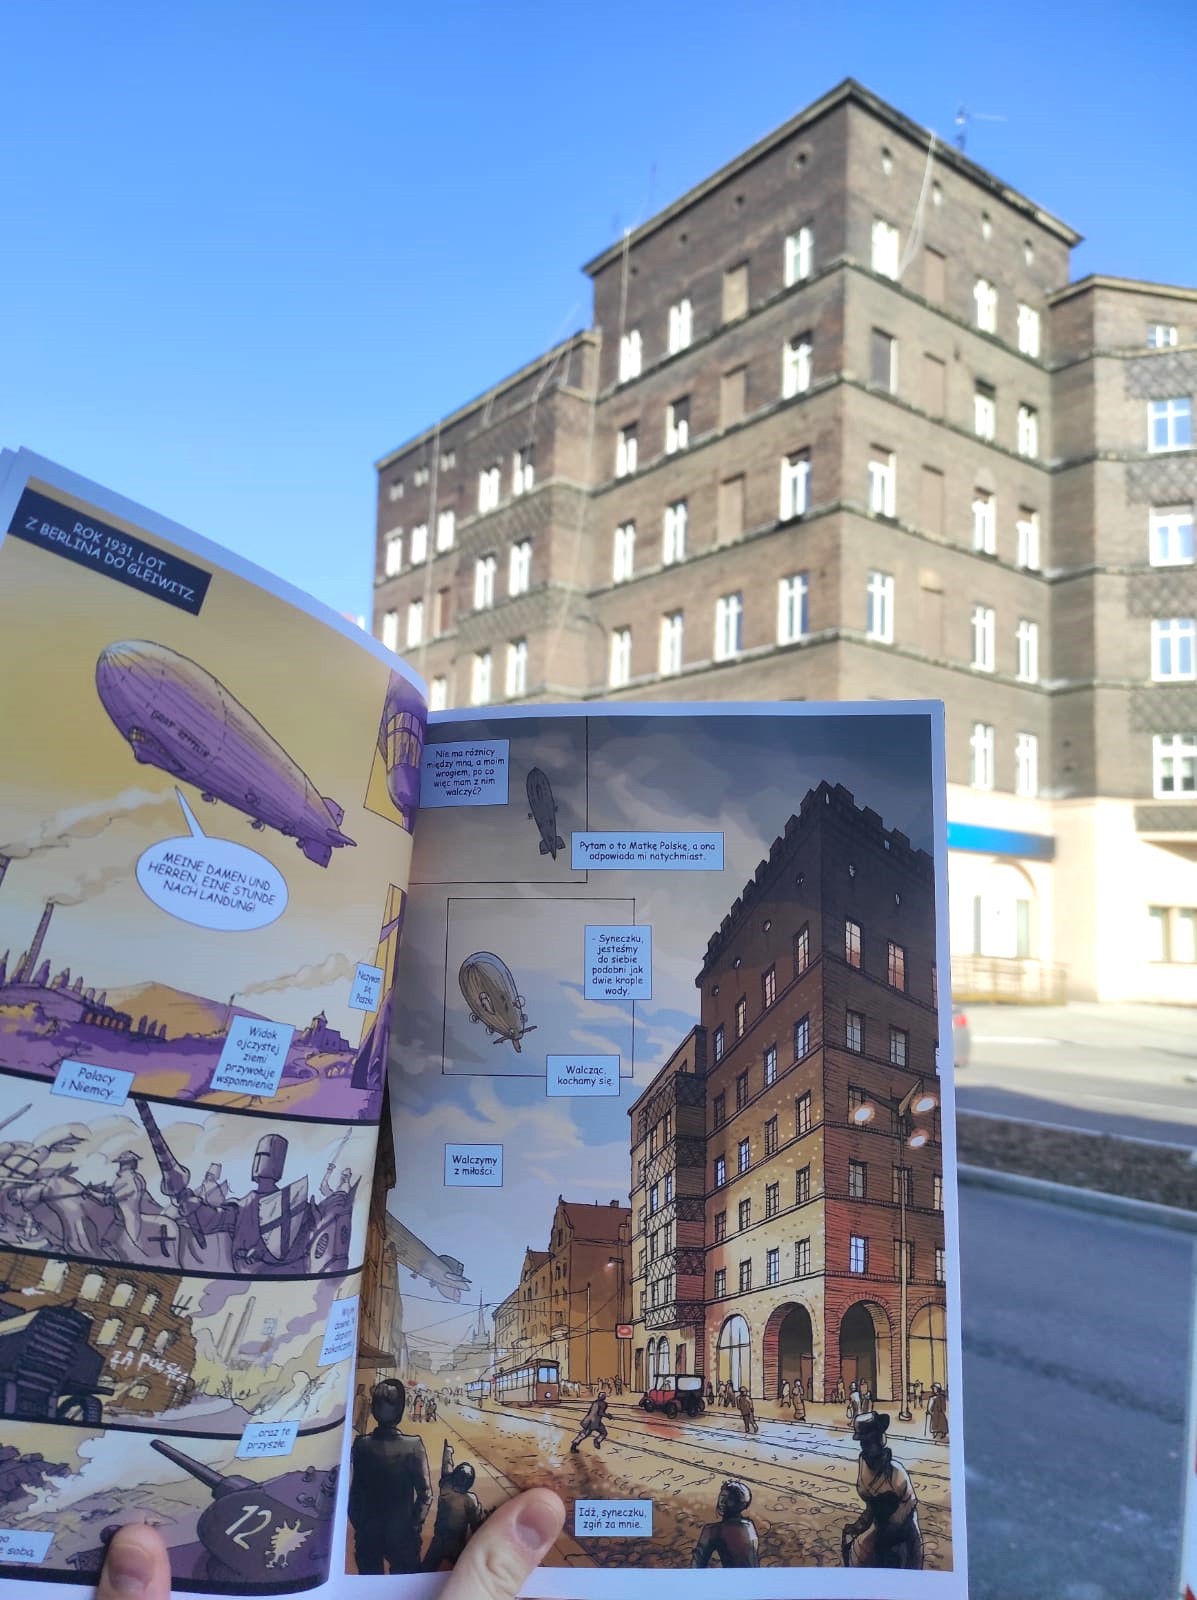 otwarty komiks i widok na budynek przy pl. Piastów